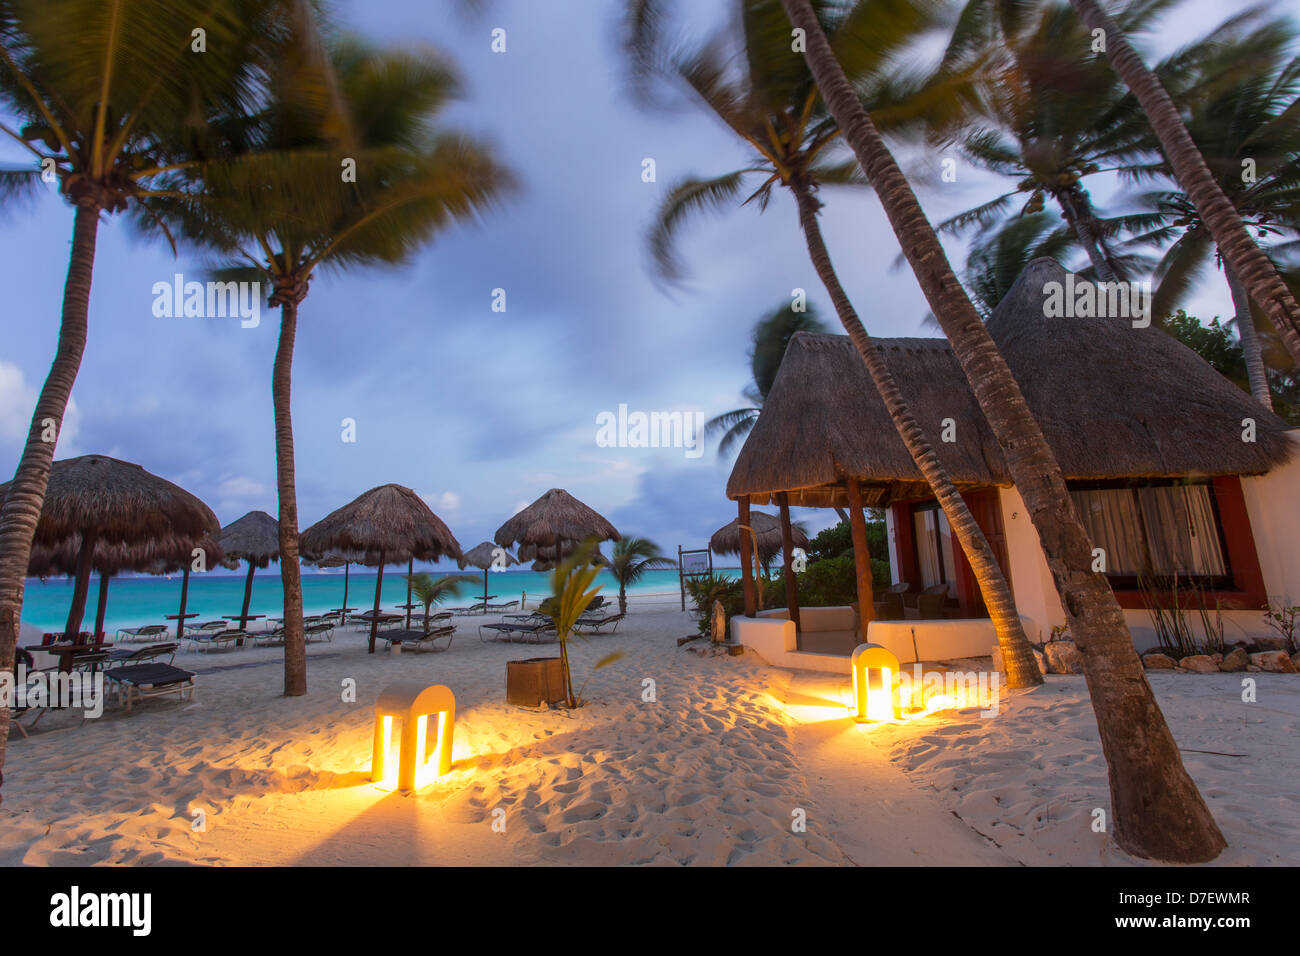 Hébergement de style cabana sur la plage entourée de palmiers à l'aube Banque D'Images